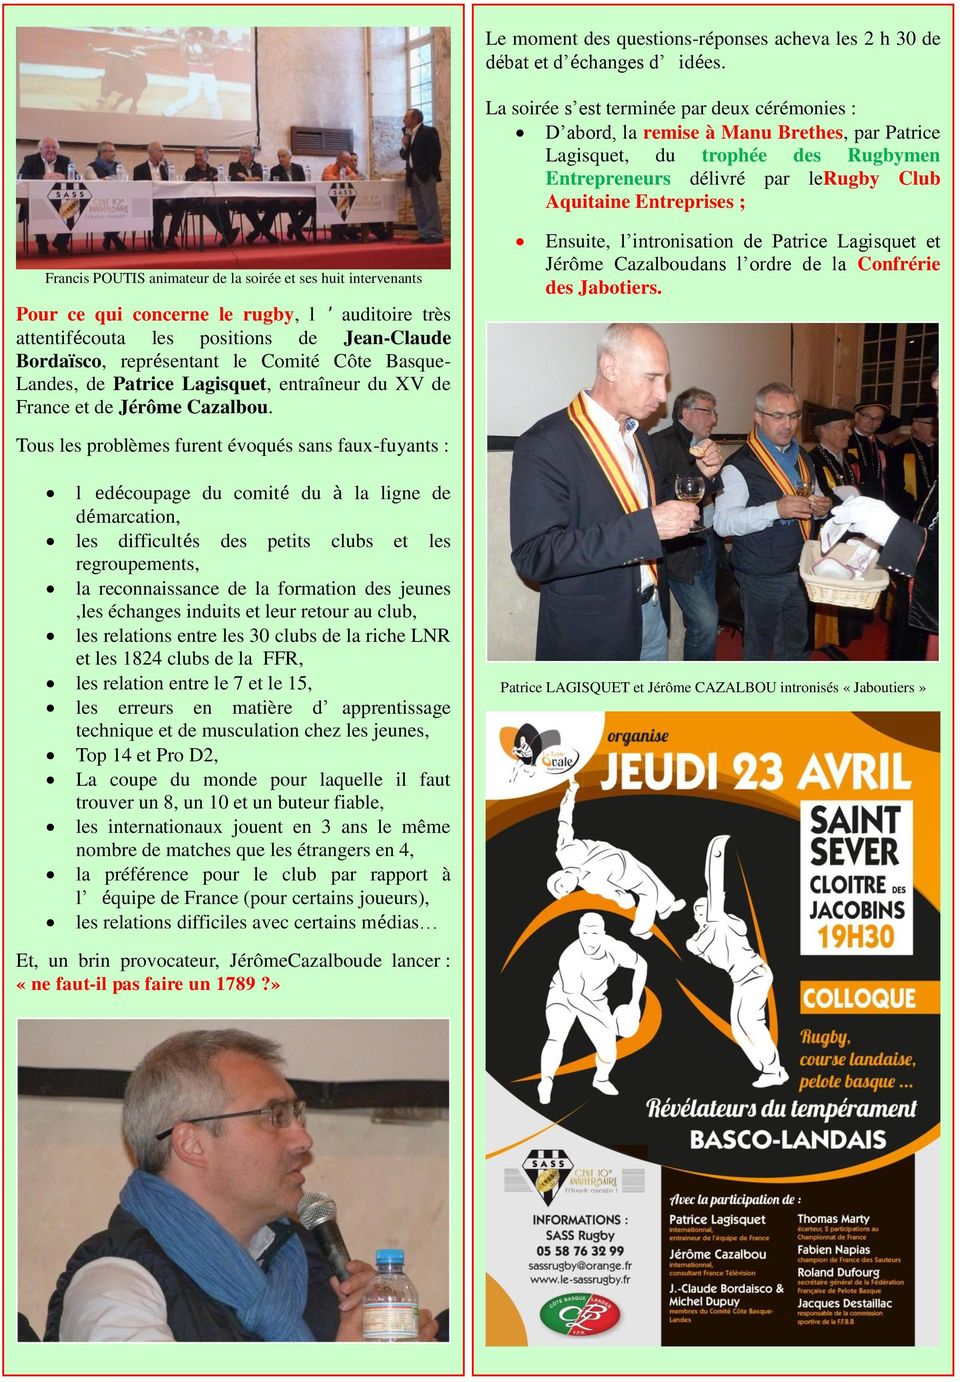 POUTIS animateur de la soirée et ses huit intervenants Pour ce qui concerne le rugby, l auditoire très attentifécouta les positions de Jean-Claude Bordaïsco, représentant le Comité Côte Basque-